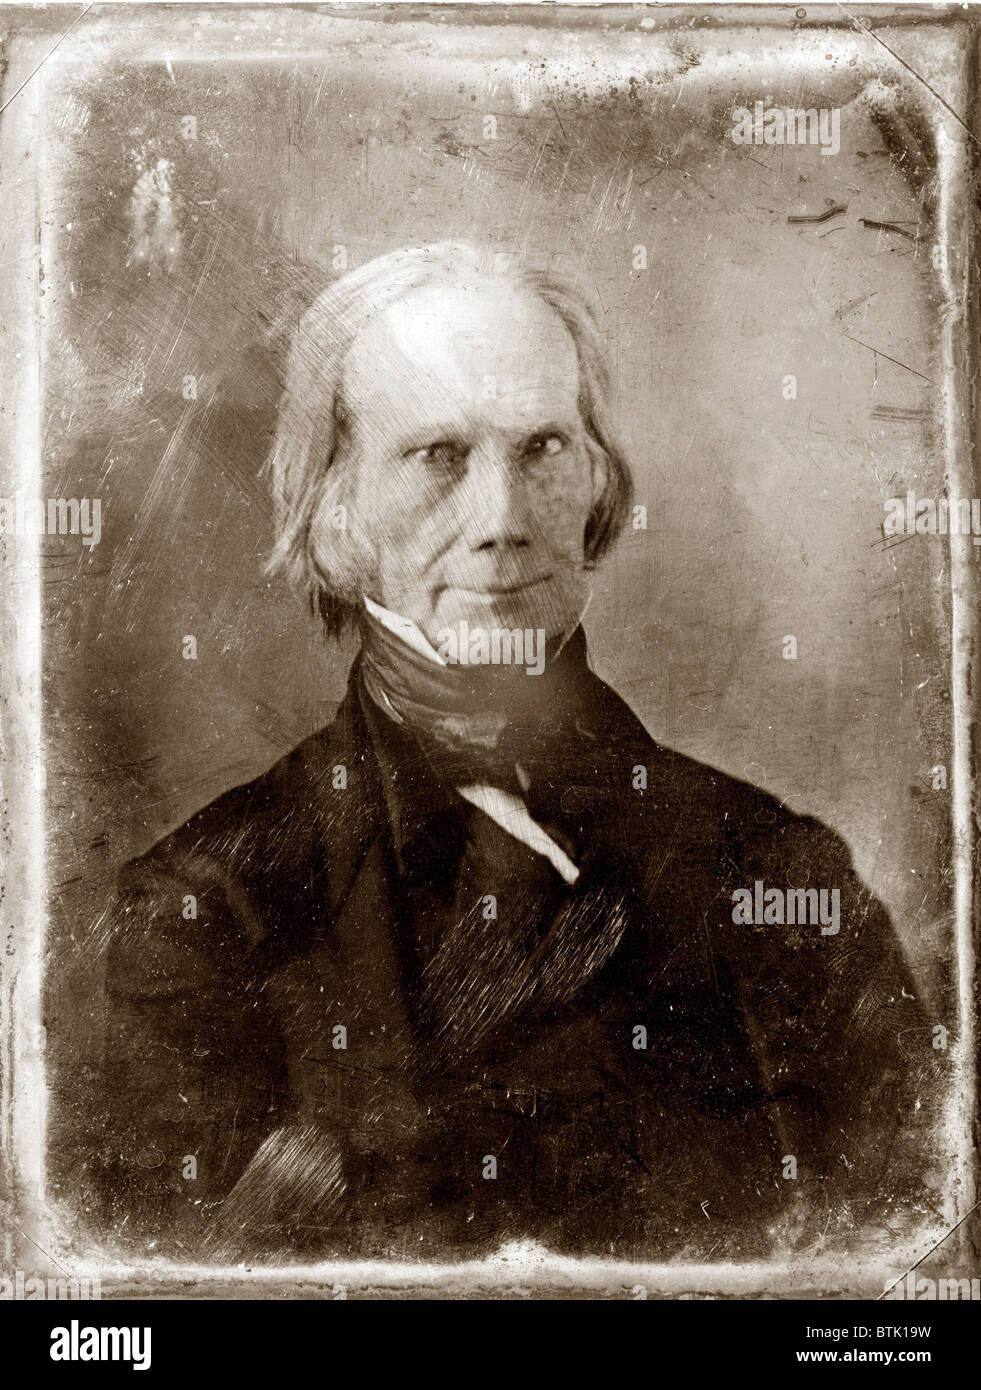 Henry Clay (1777-1852), 1851 Dauguerreotype von Matthew Brady. In seinen Siebzigern entwarf er den Kompromiss von 1850, Abwendung der Bürgerkrieg seit zehn Jahren. Stockfoto